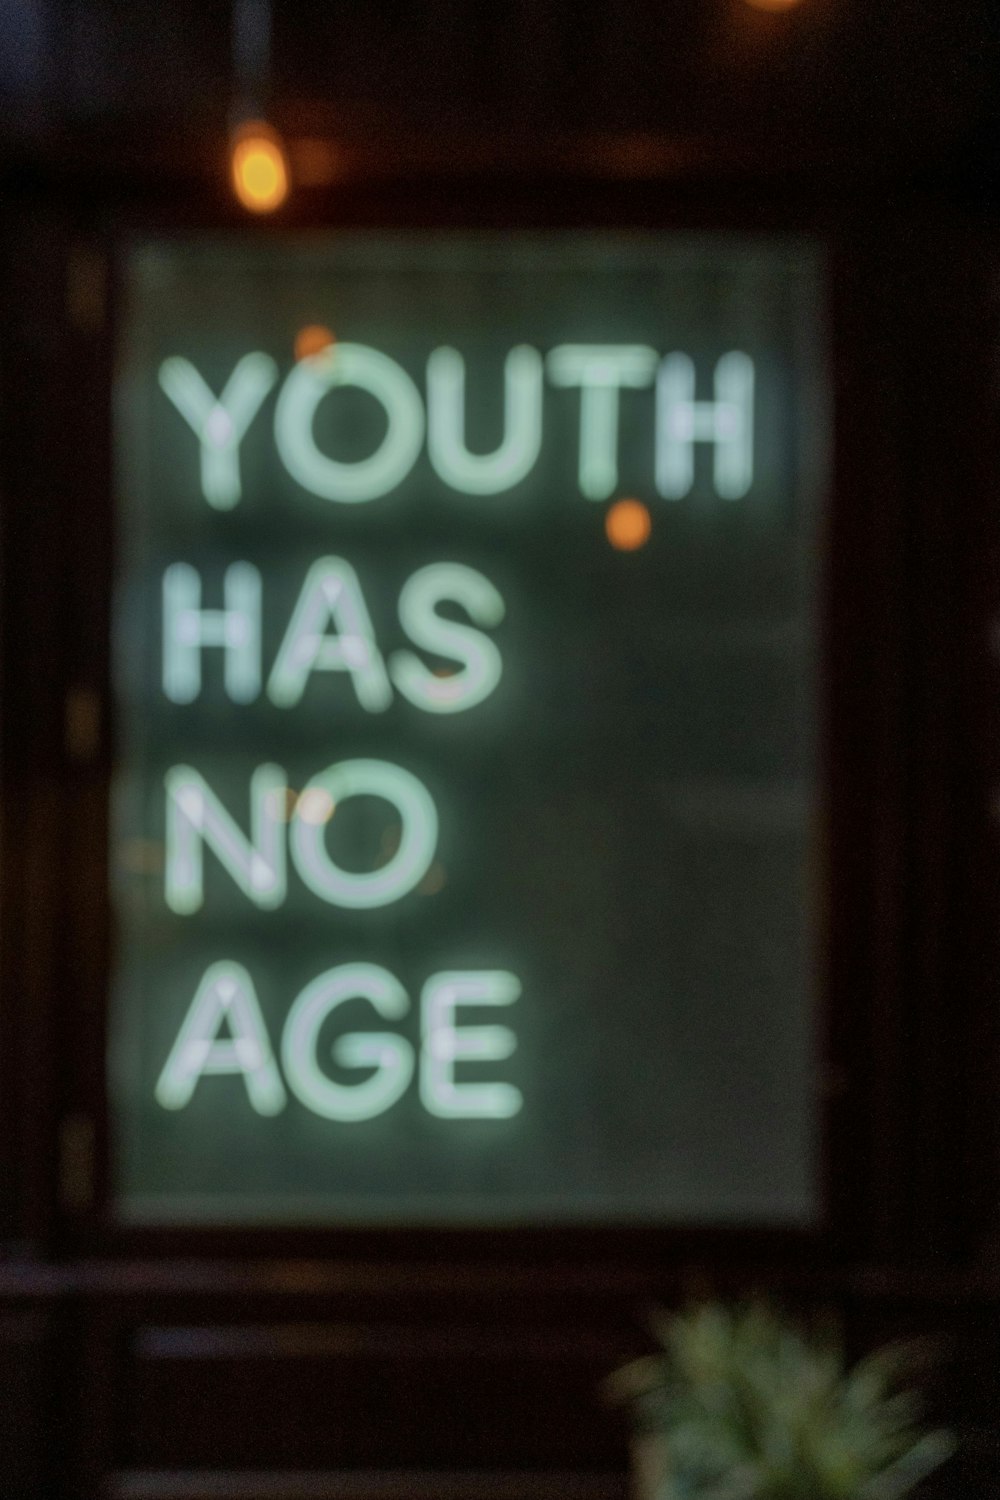 若者には年齢がないと言う看板